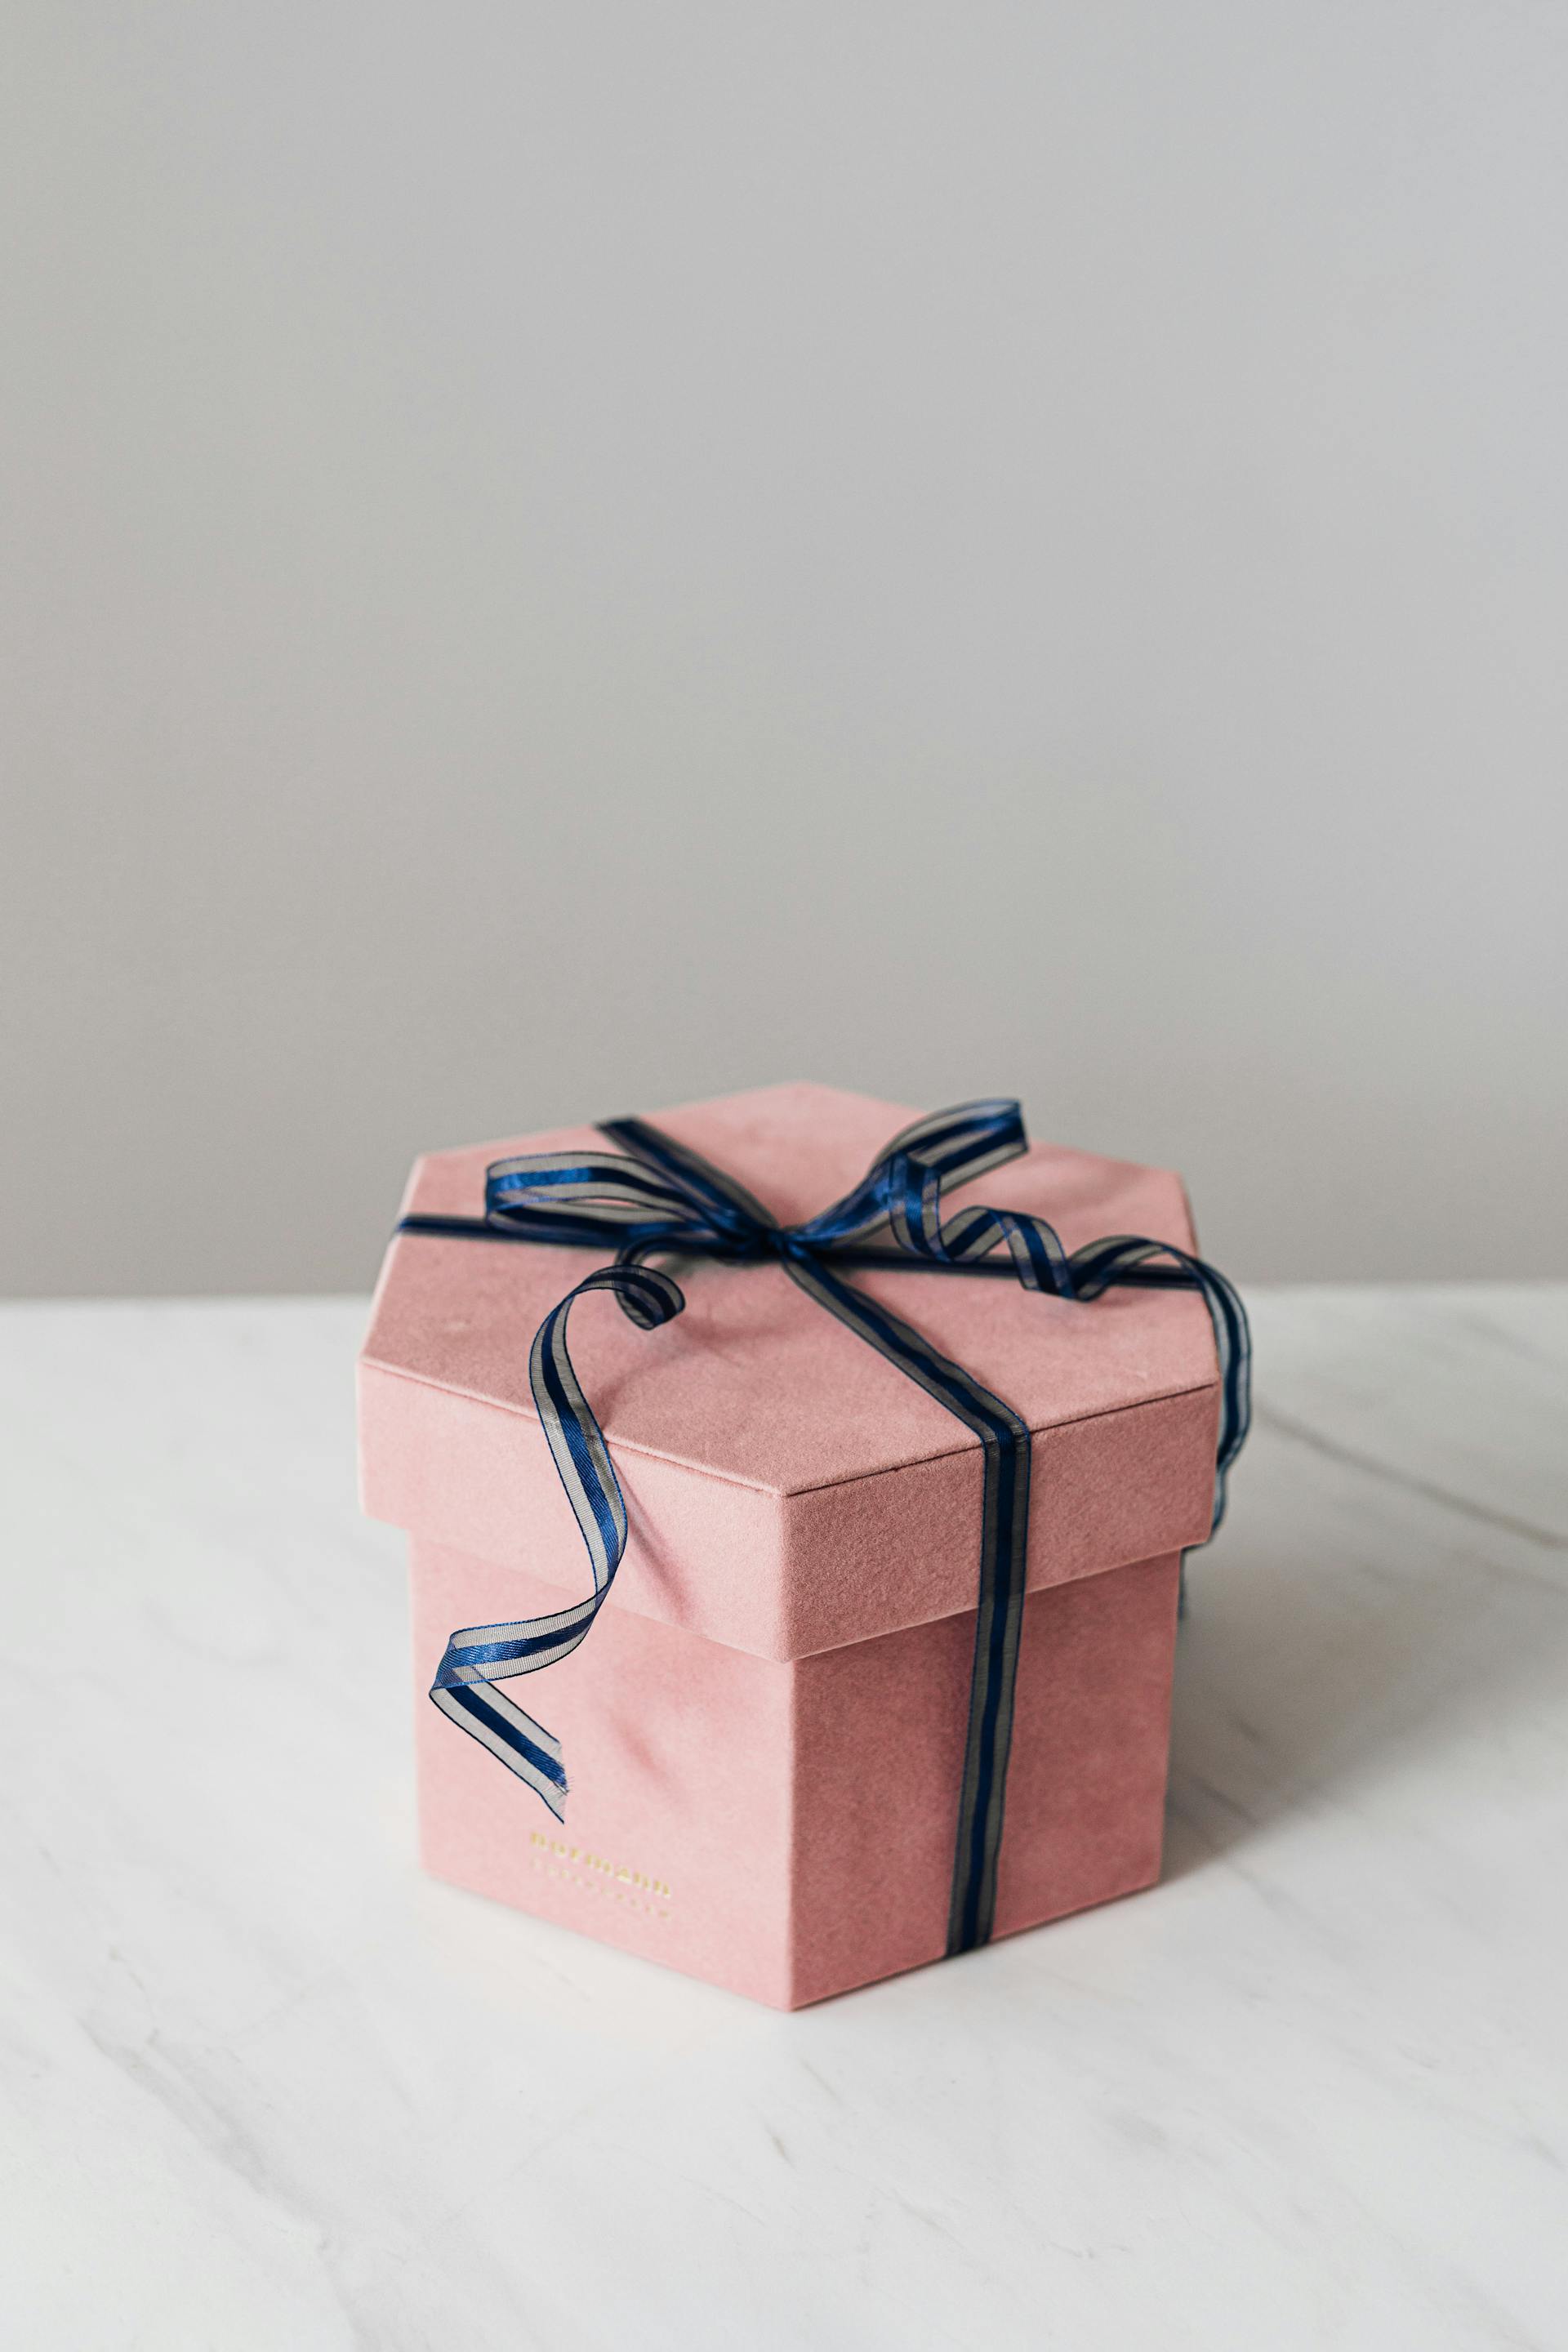 Caja de regalo | Foto: Pexels